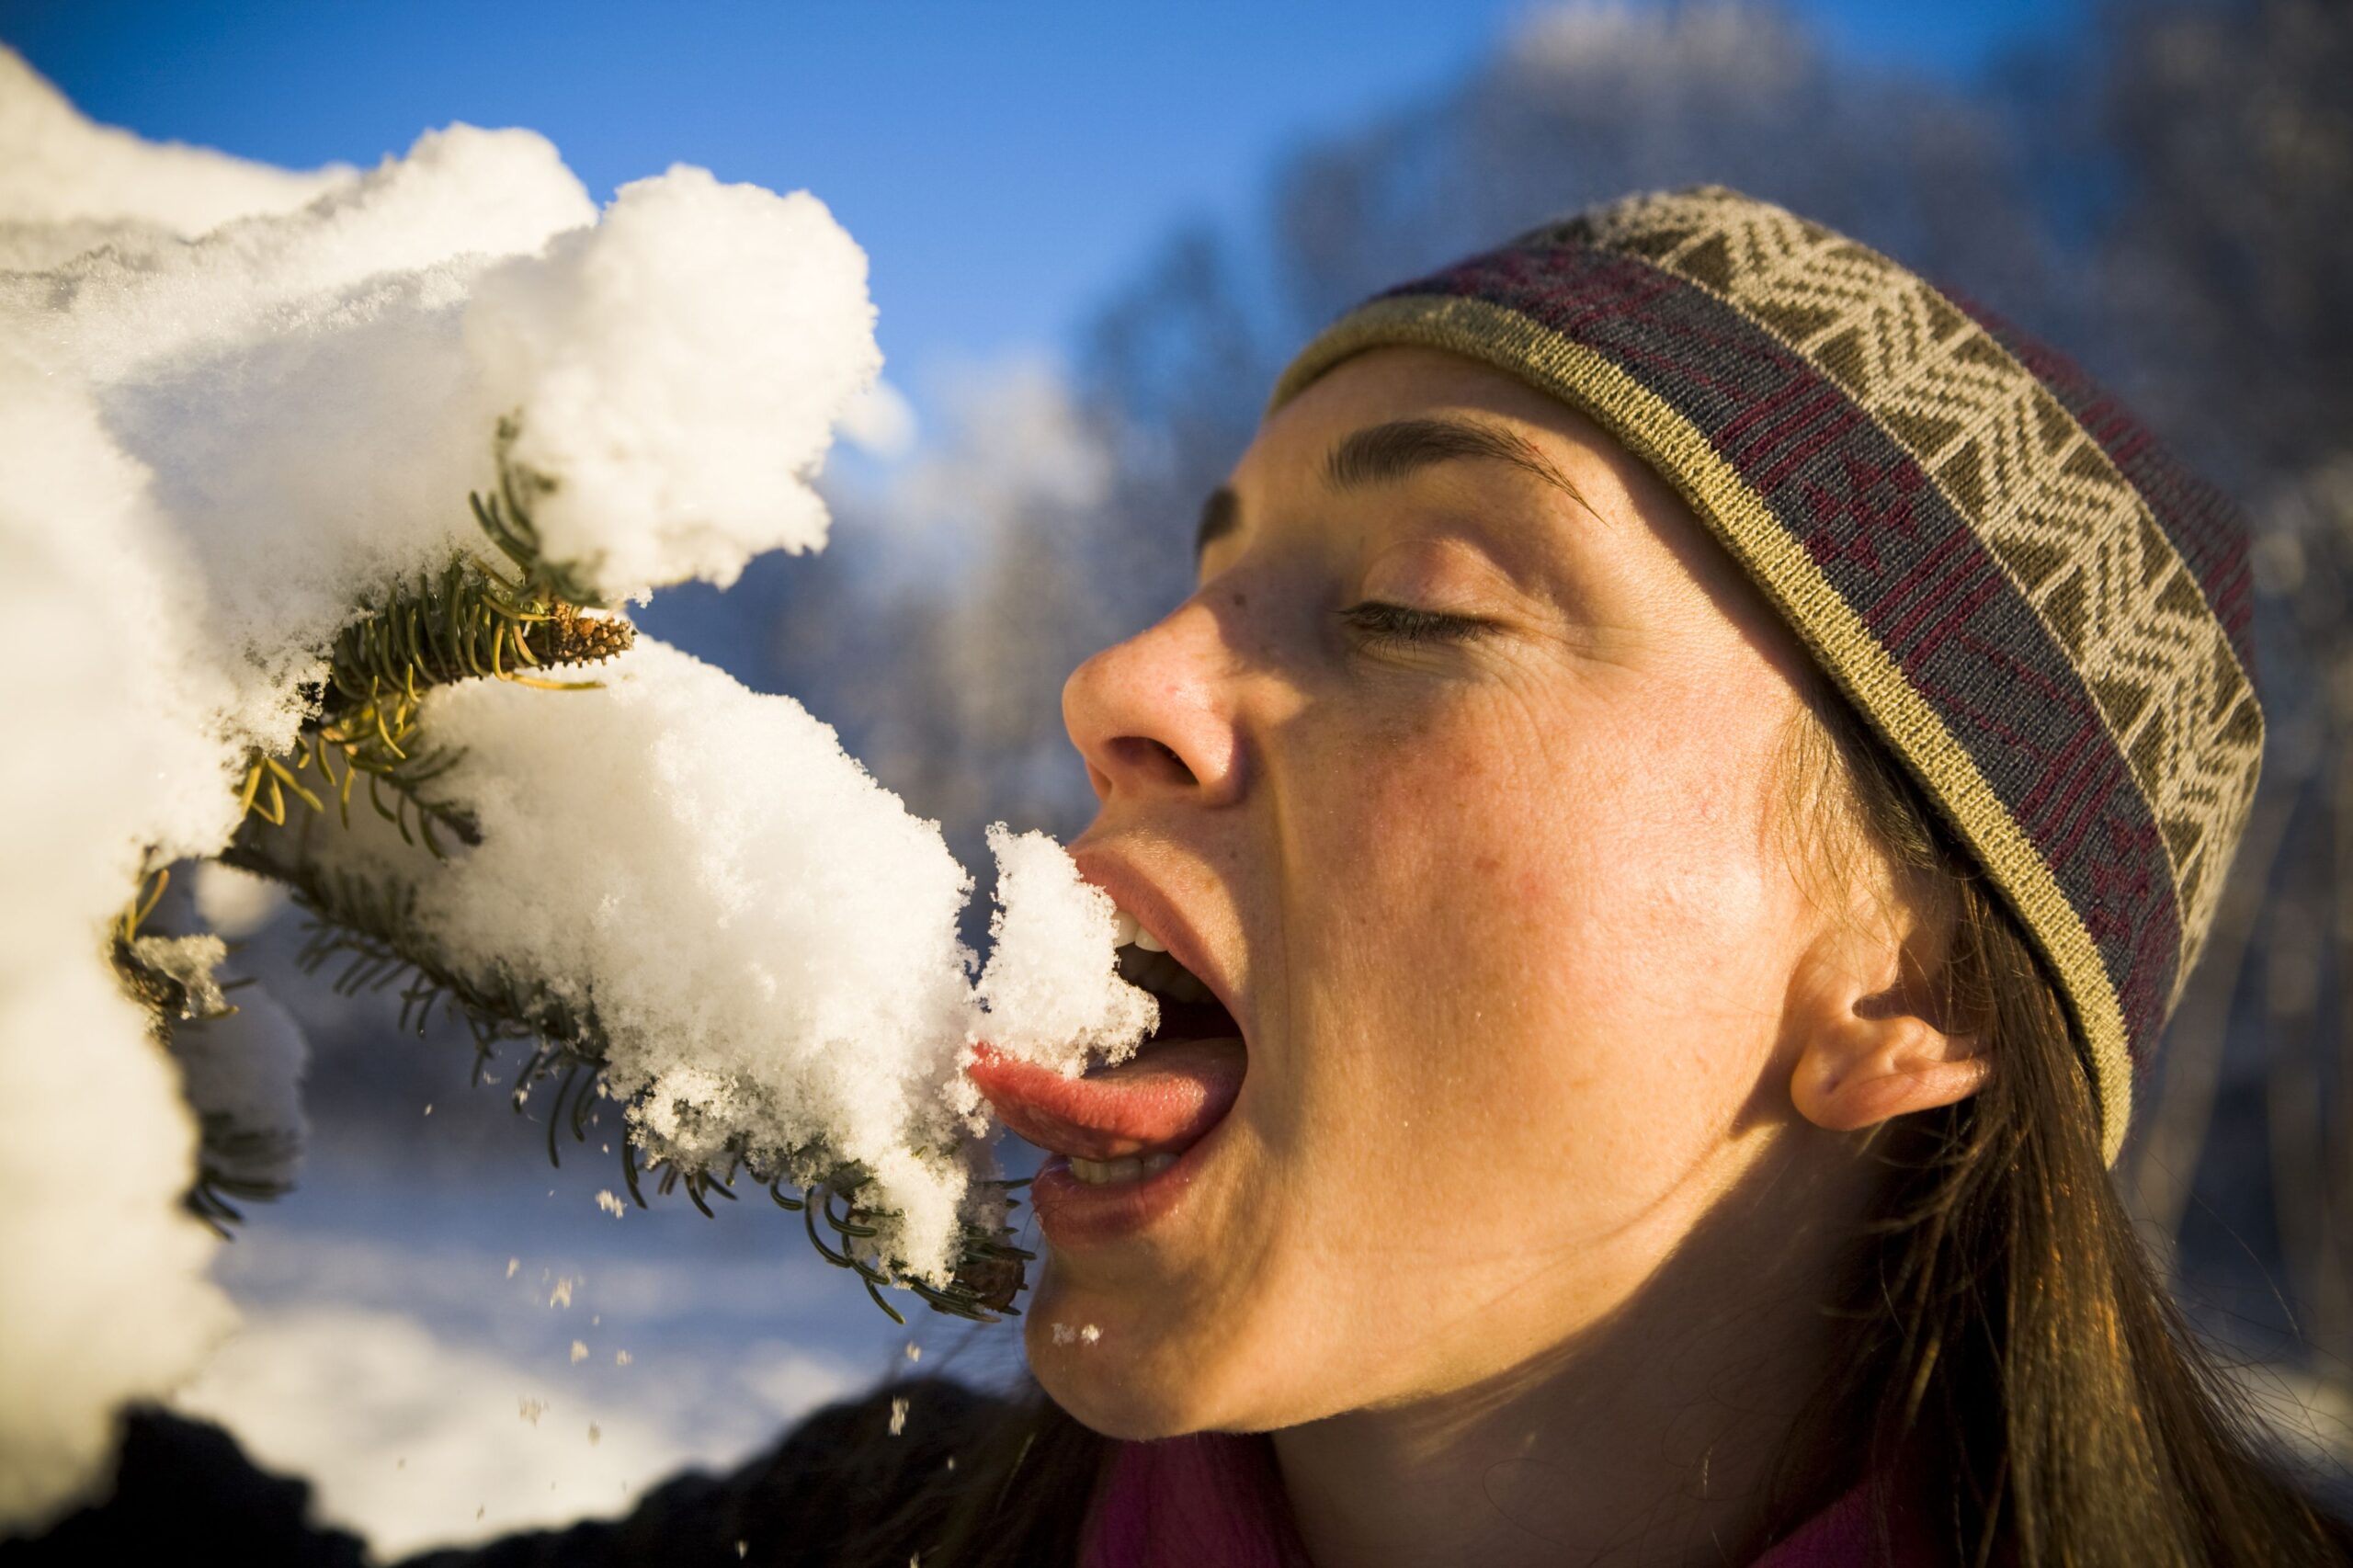 Peuton manger de la neige sans danger ?